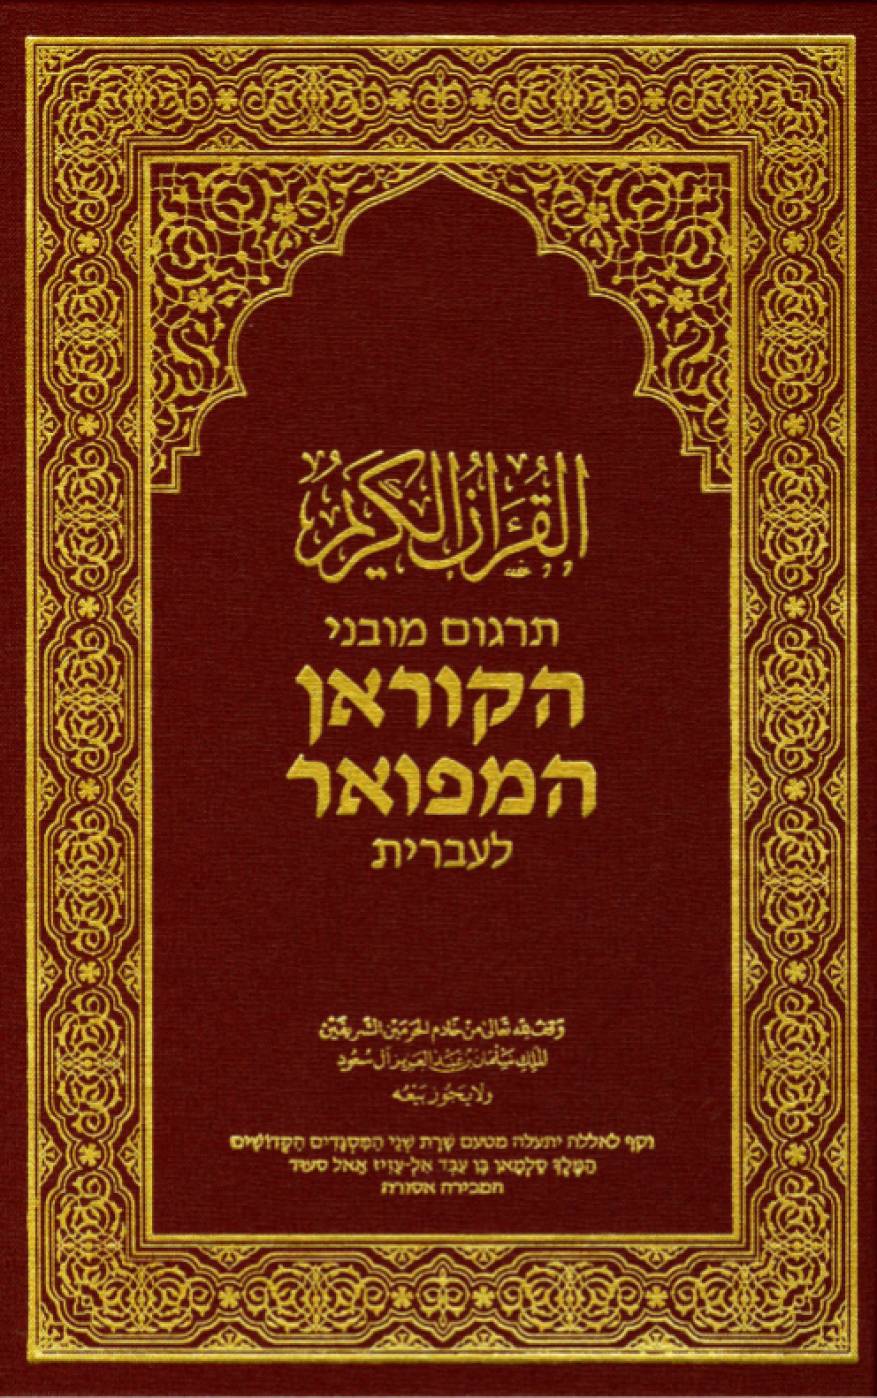 غلاف الترجمة العبرية لمصحف مجمع الملك فهد